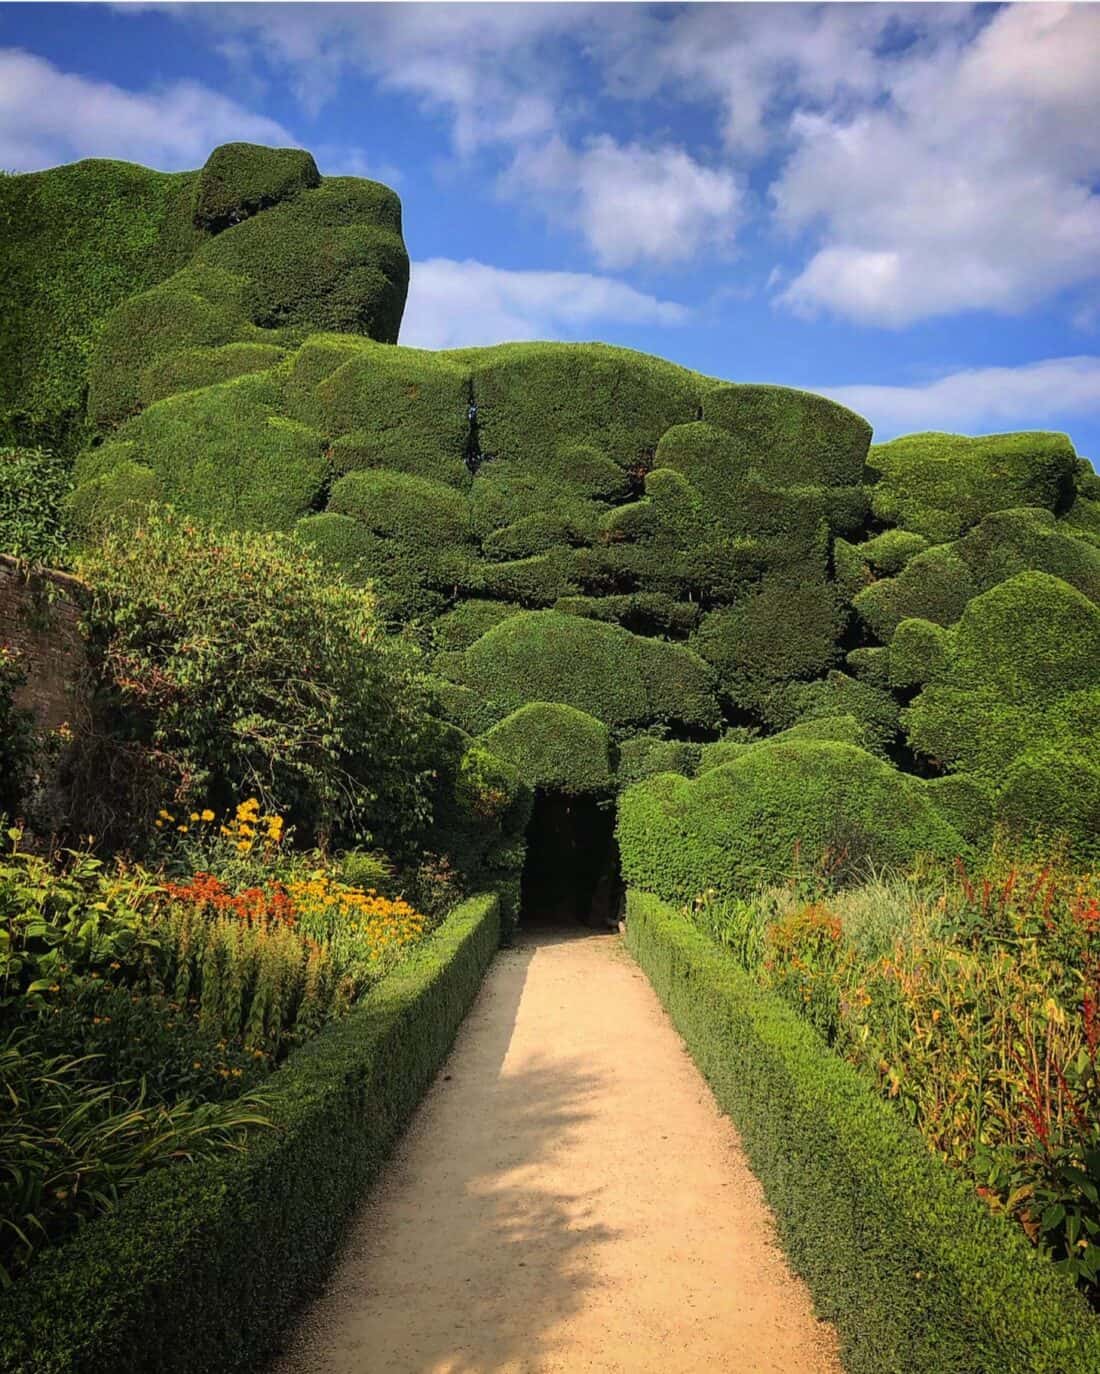 A path through a hedge.